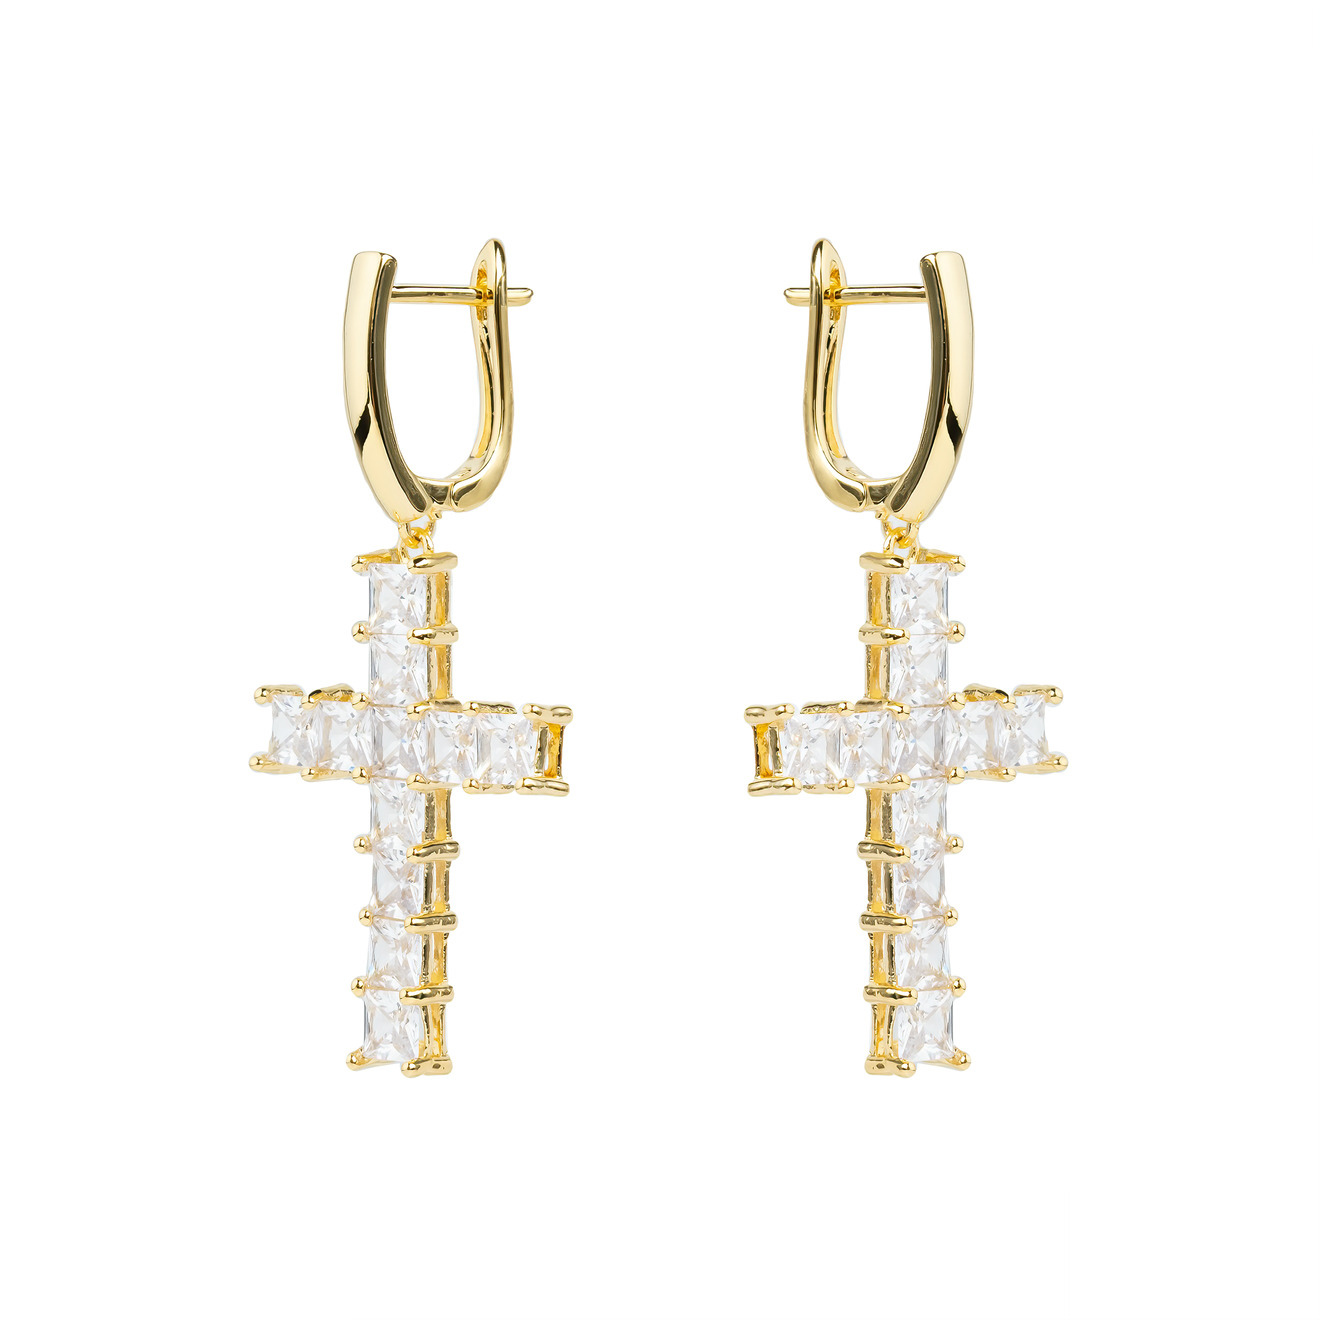 Herald Percy Золотистые серьги-кресты с кристаллами herald percy серебристые серьги кресты с кристаллами